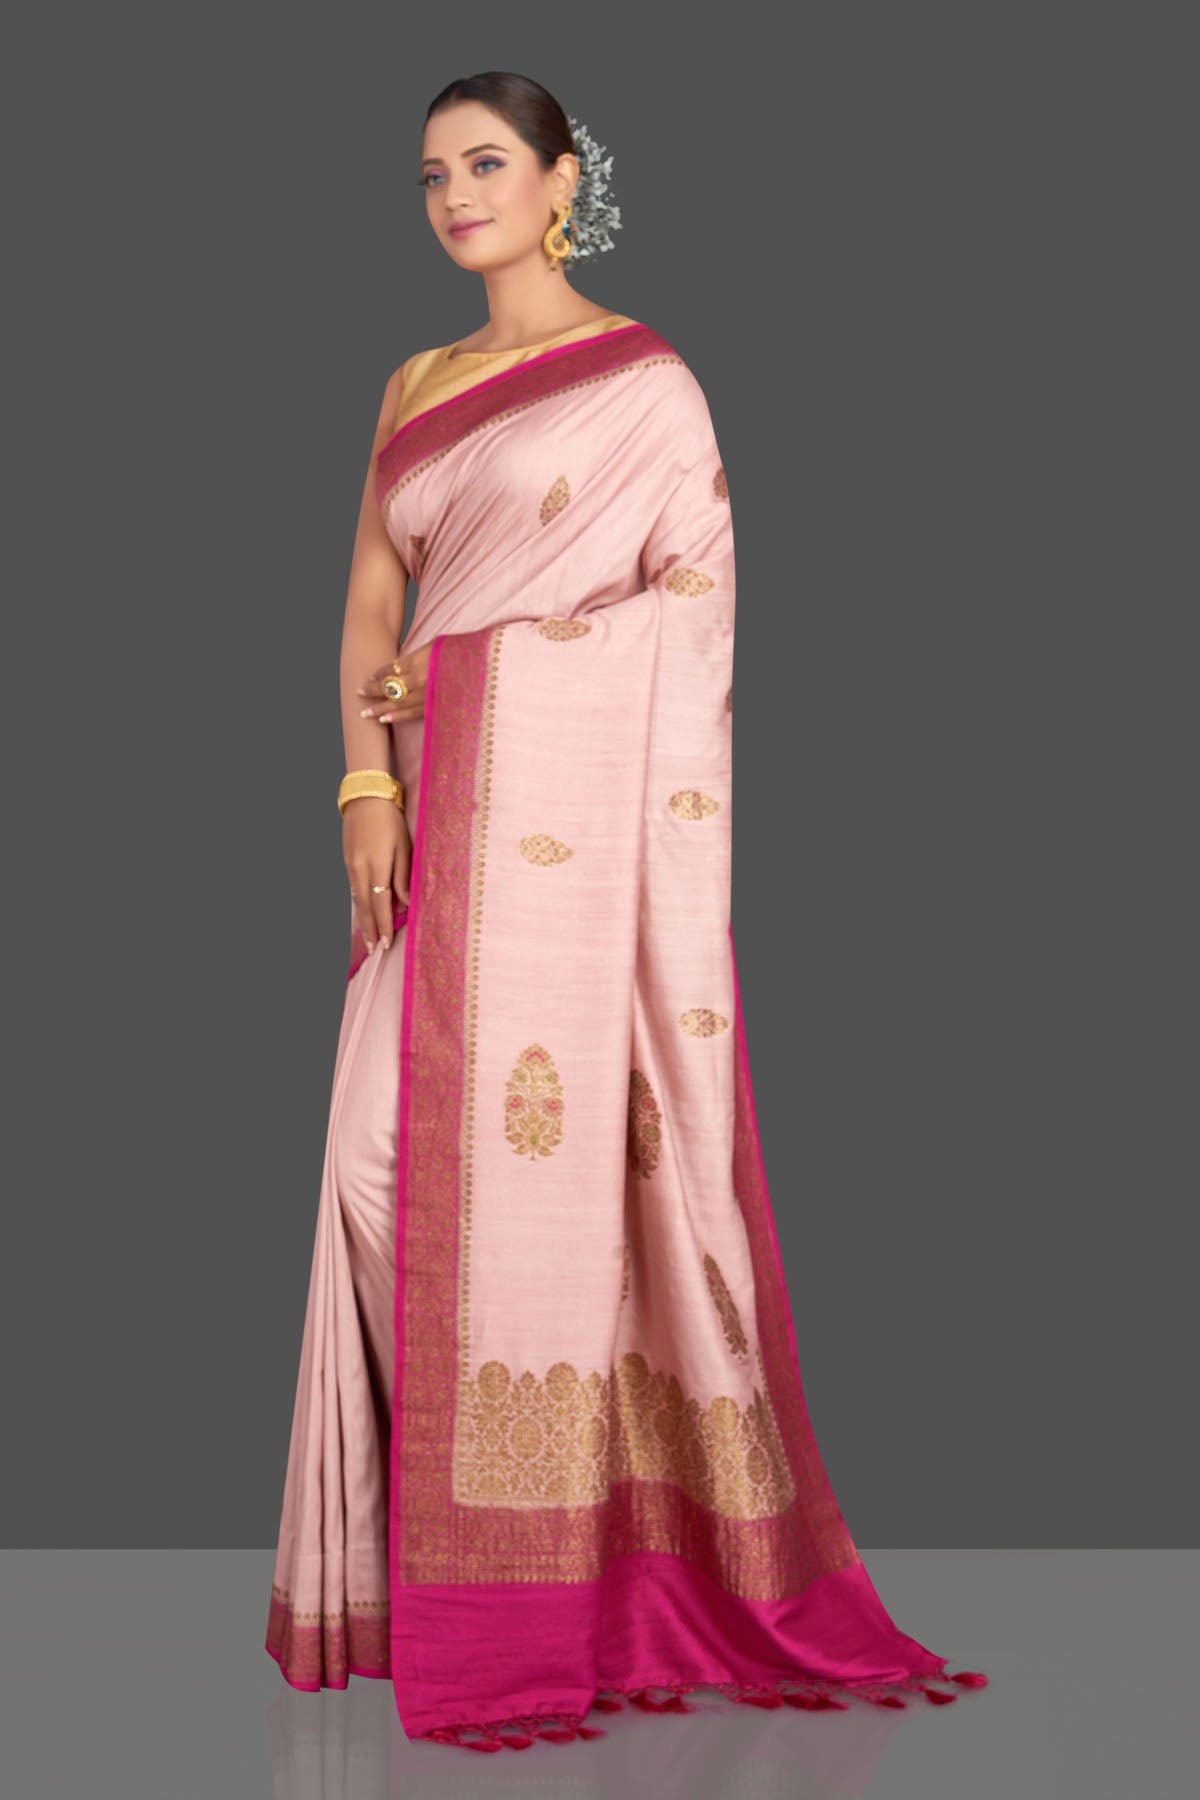 Buy beautiful light pink tussar Banarasi saree online in USA with dark pink border. Look your best on special occasions with stunning Banarasi saris, pure silk saris, tussar sarees, handwoven sarees from Pure Elegance Indian saree store in USA.-pallu